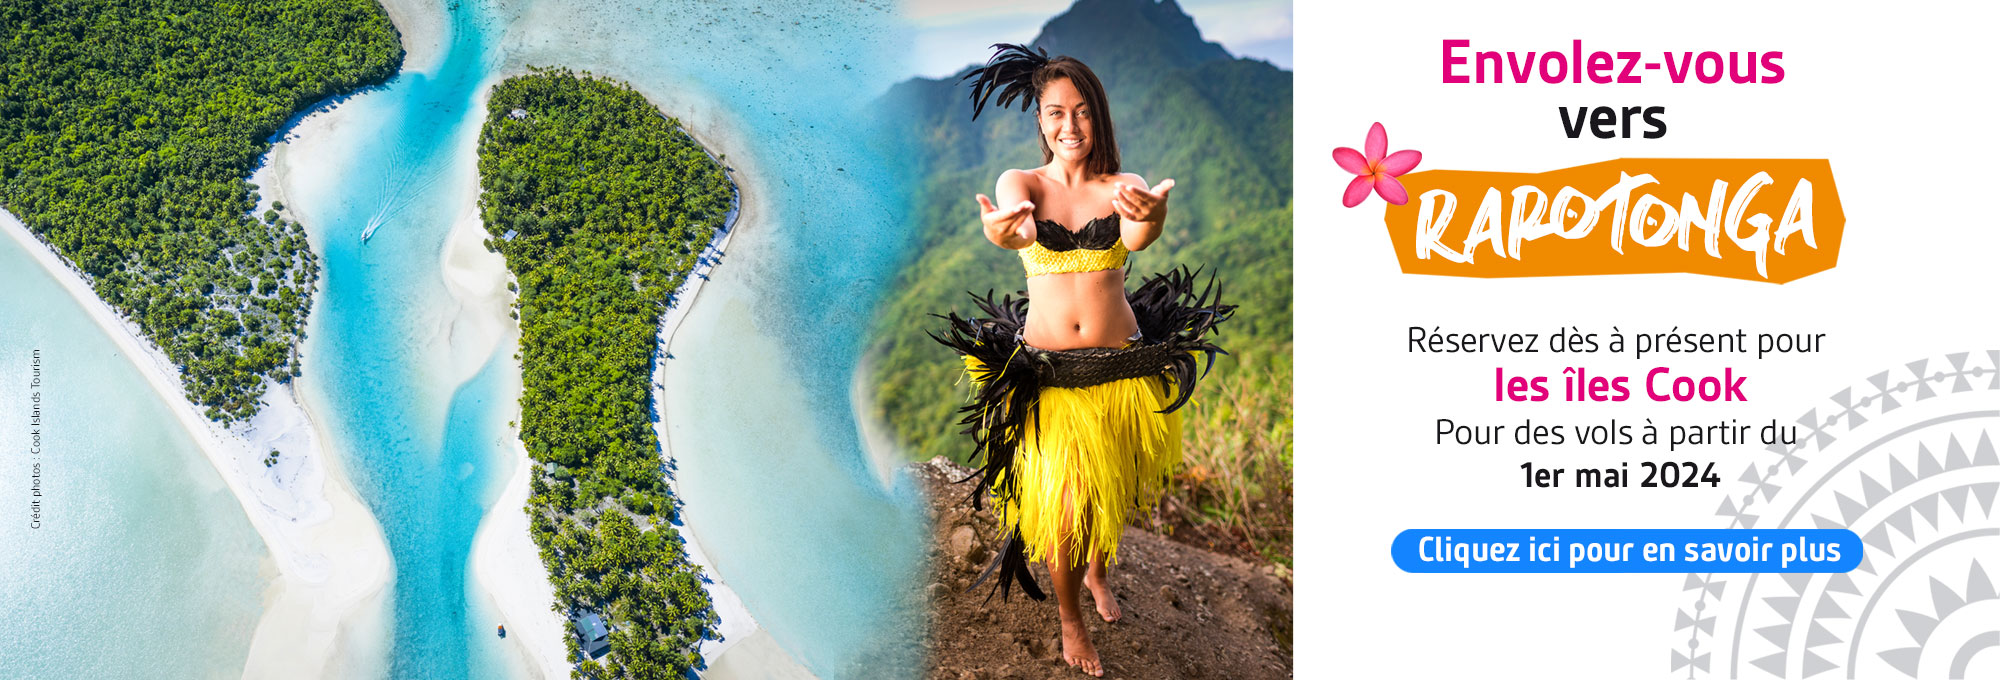 Envolez-vous vers Rarotonga avec Air Tahiti